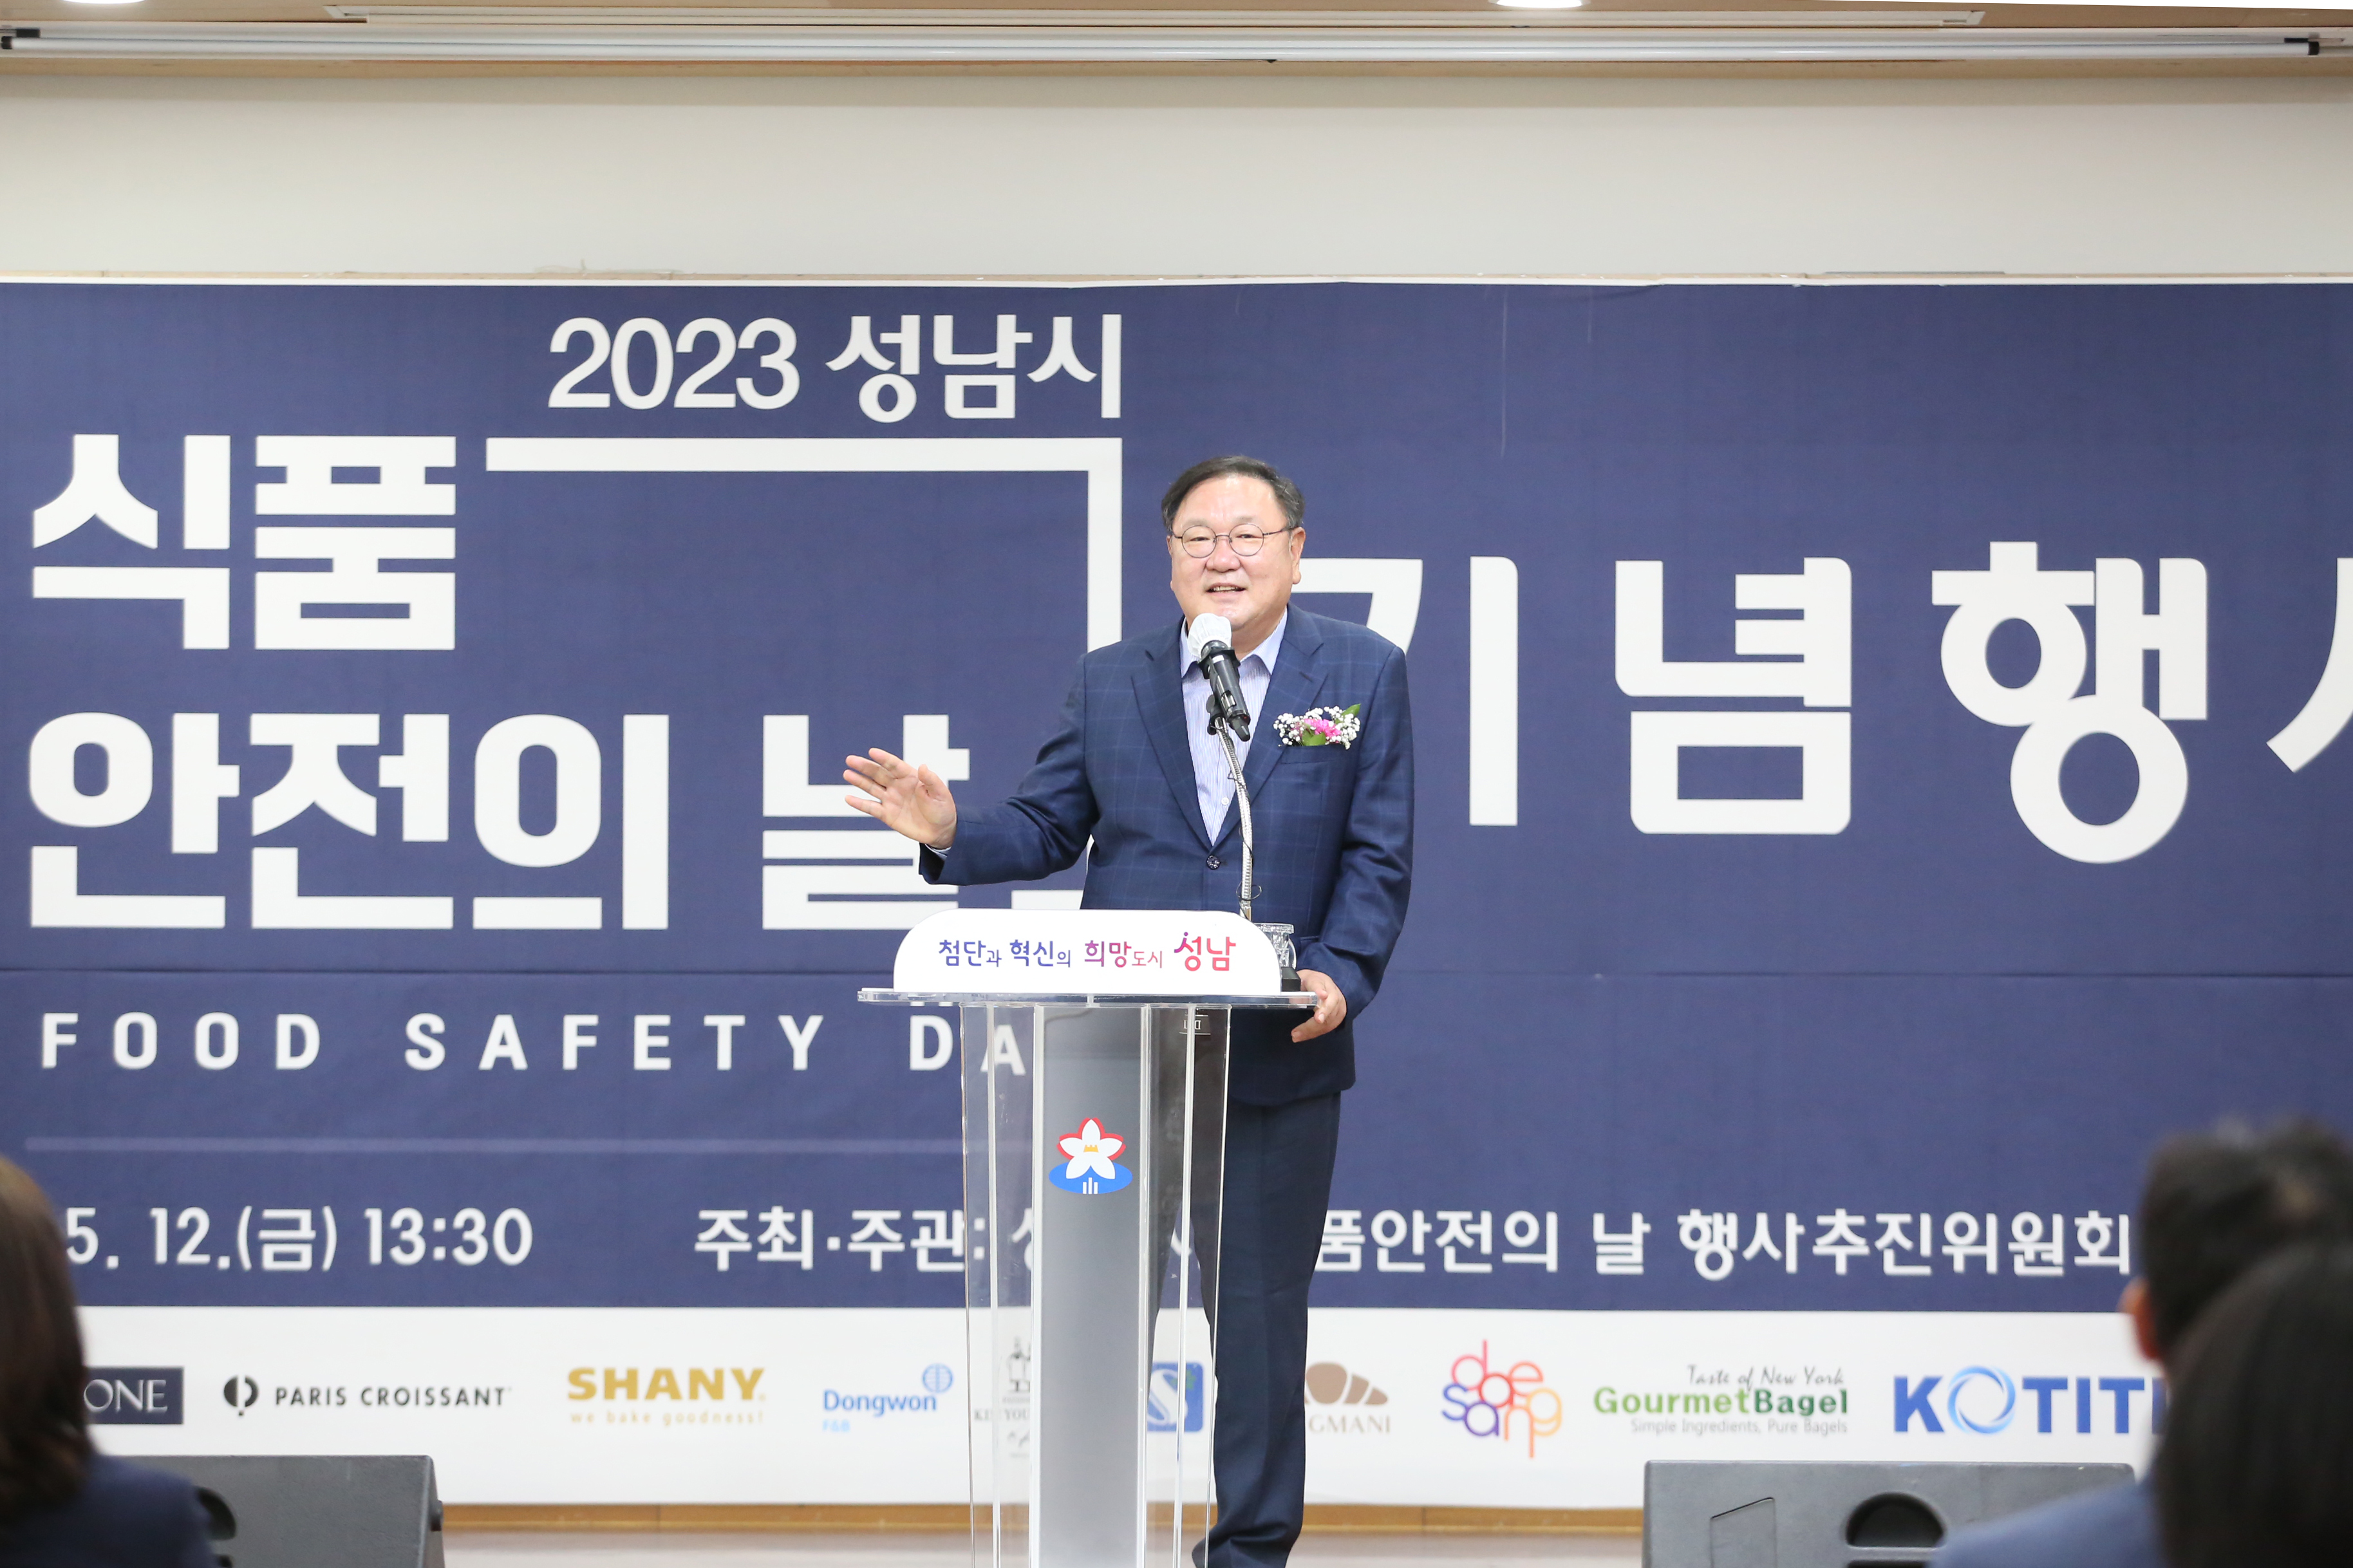 2023-05-12 성남시식품안전의날 기념행사 - 10